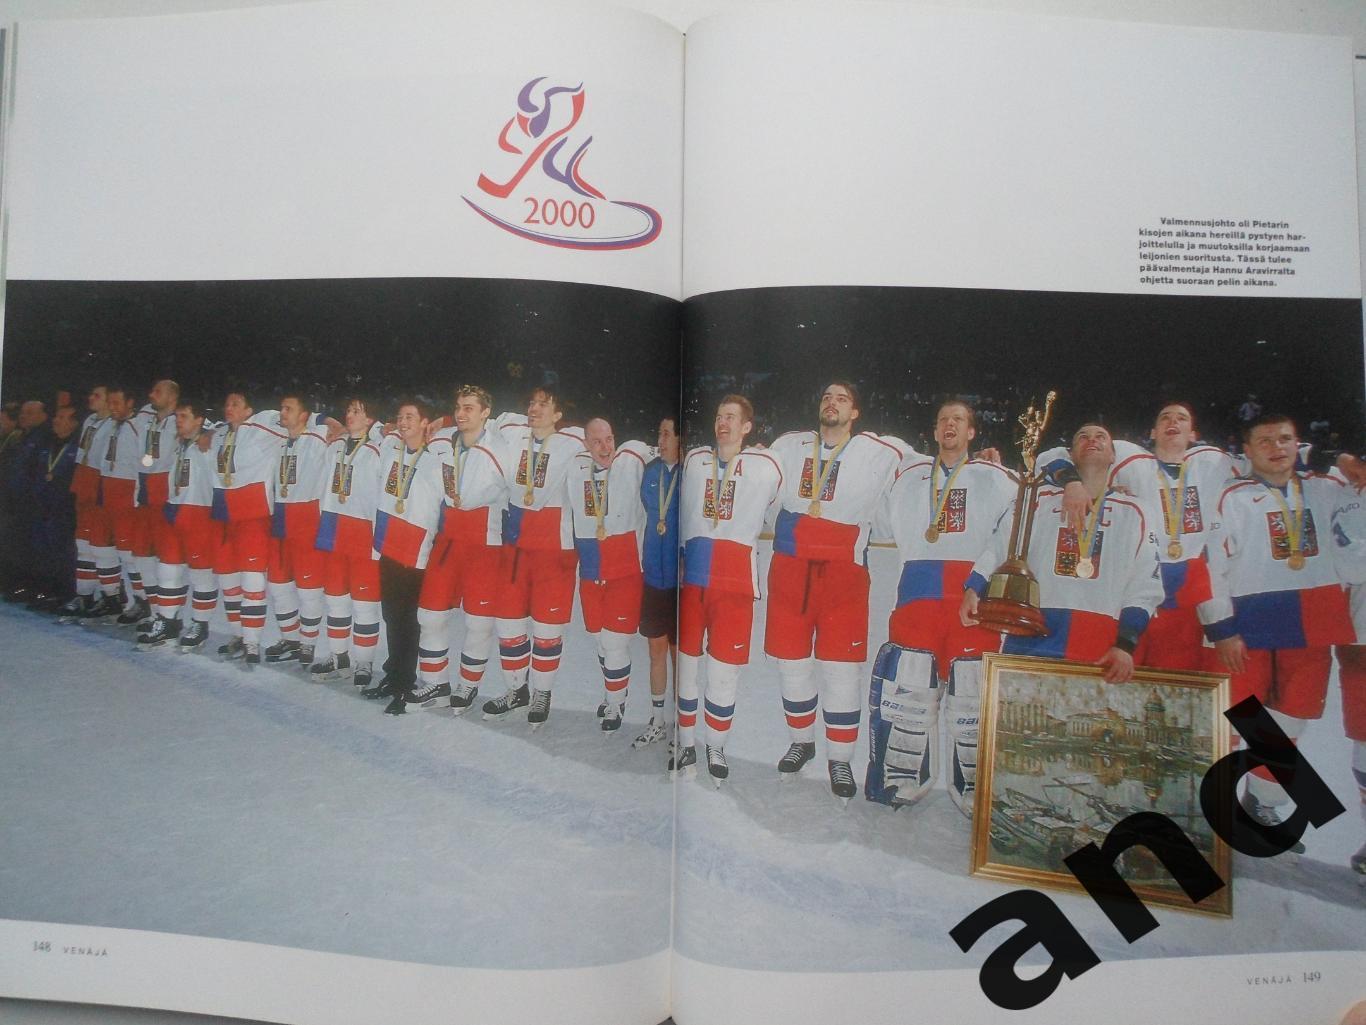 фотоальбом чемпионаты мира по хоккею 1998-2000 + Олимпиада Нагано`98 (хоккей) 2